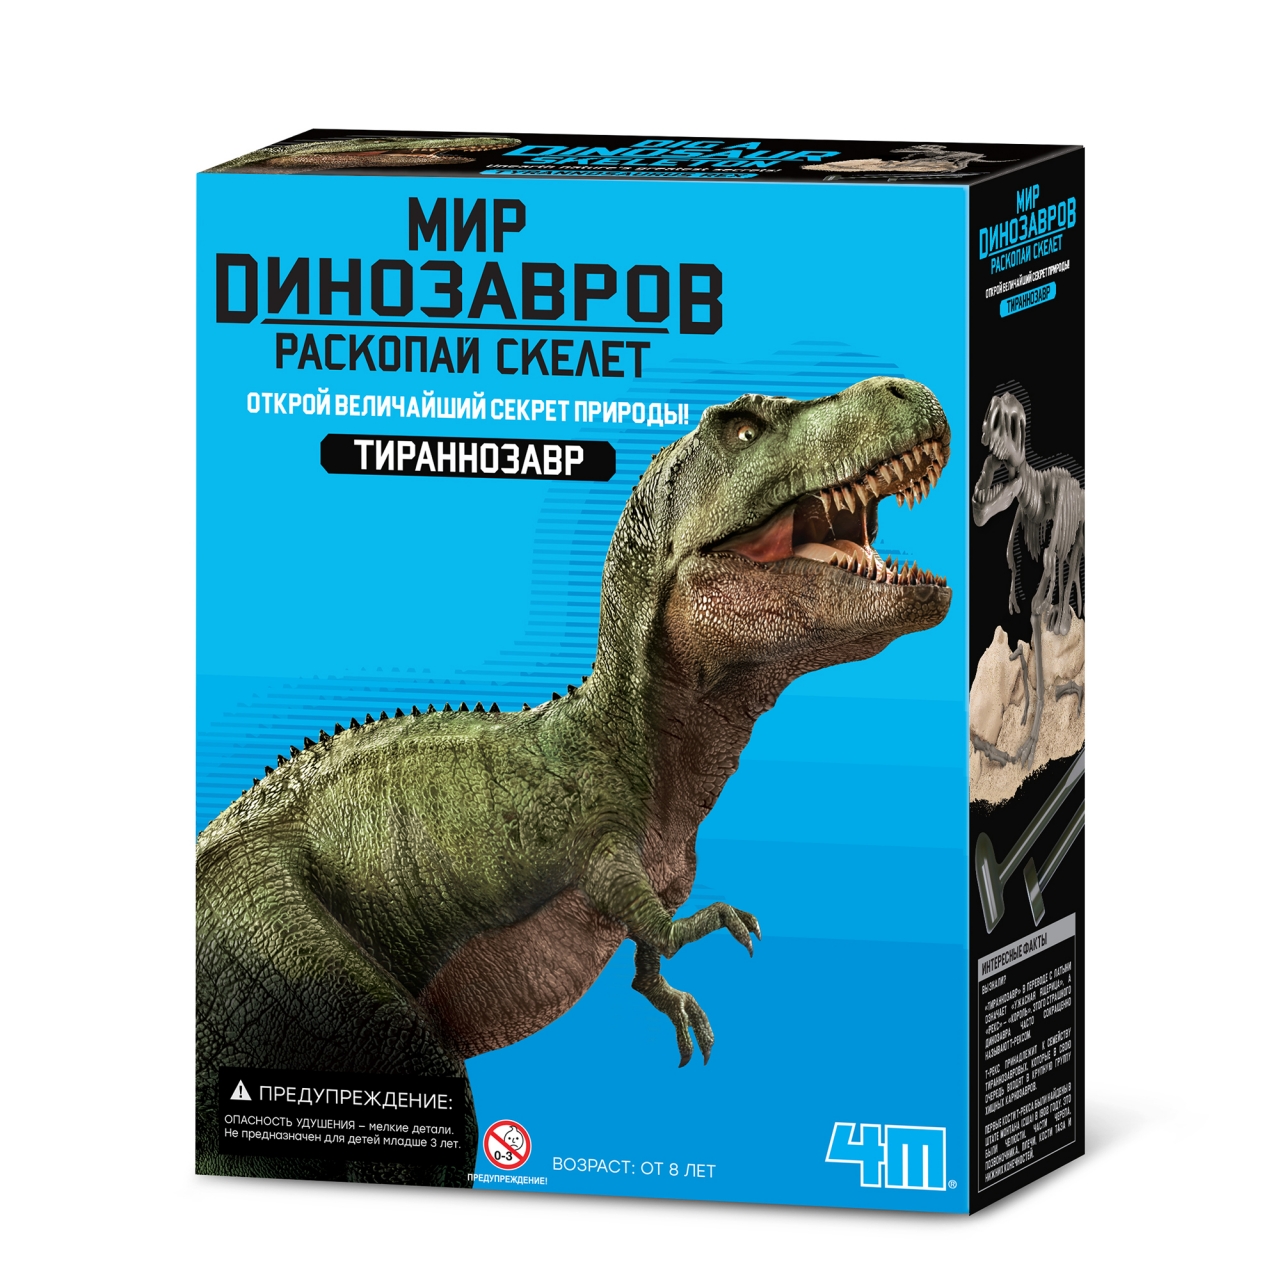 Набор для опытов 4М Игра раскопки для детей Раскопай скелет динозавра Фигурка Тираннозавра драгоценности восьми кусков парчи